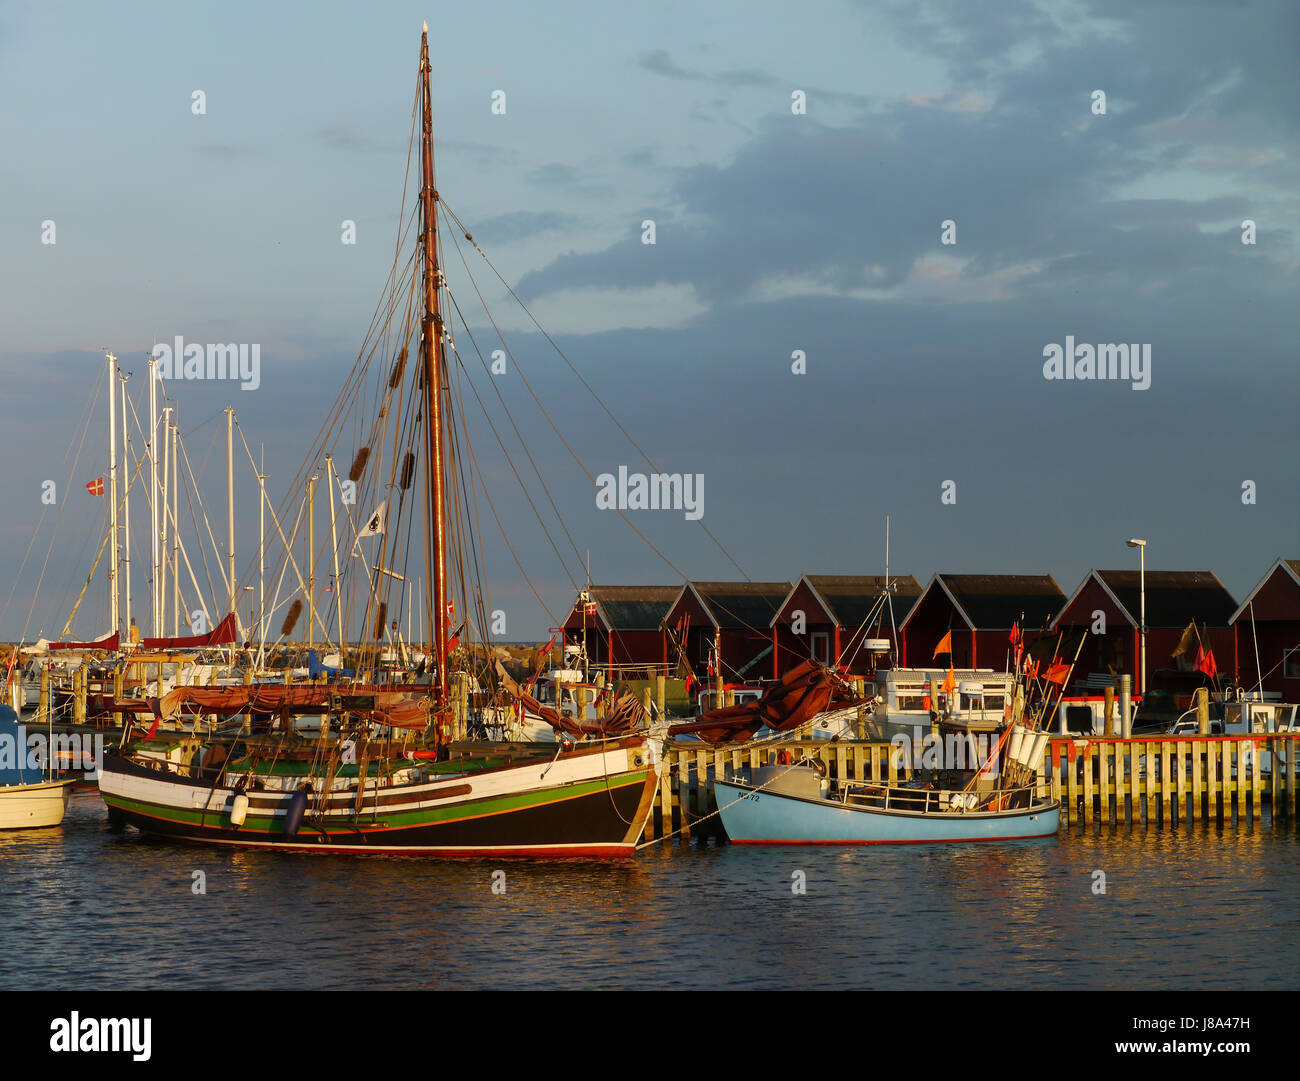 denmark, sailing boats, fishing ship, sail, denmark, water, baltic sea, salt Stock Photo